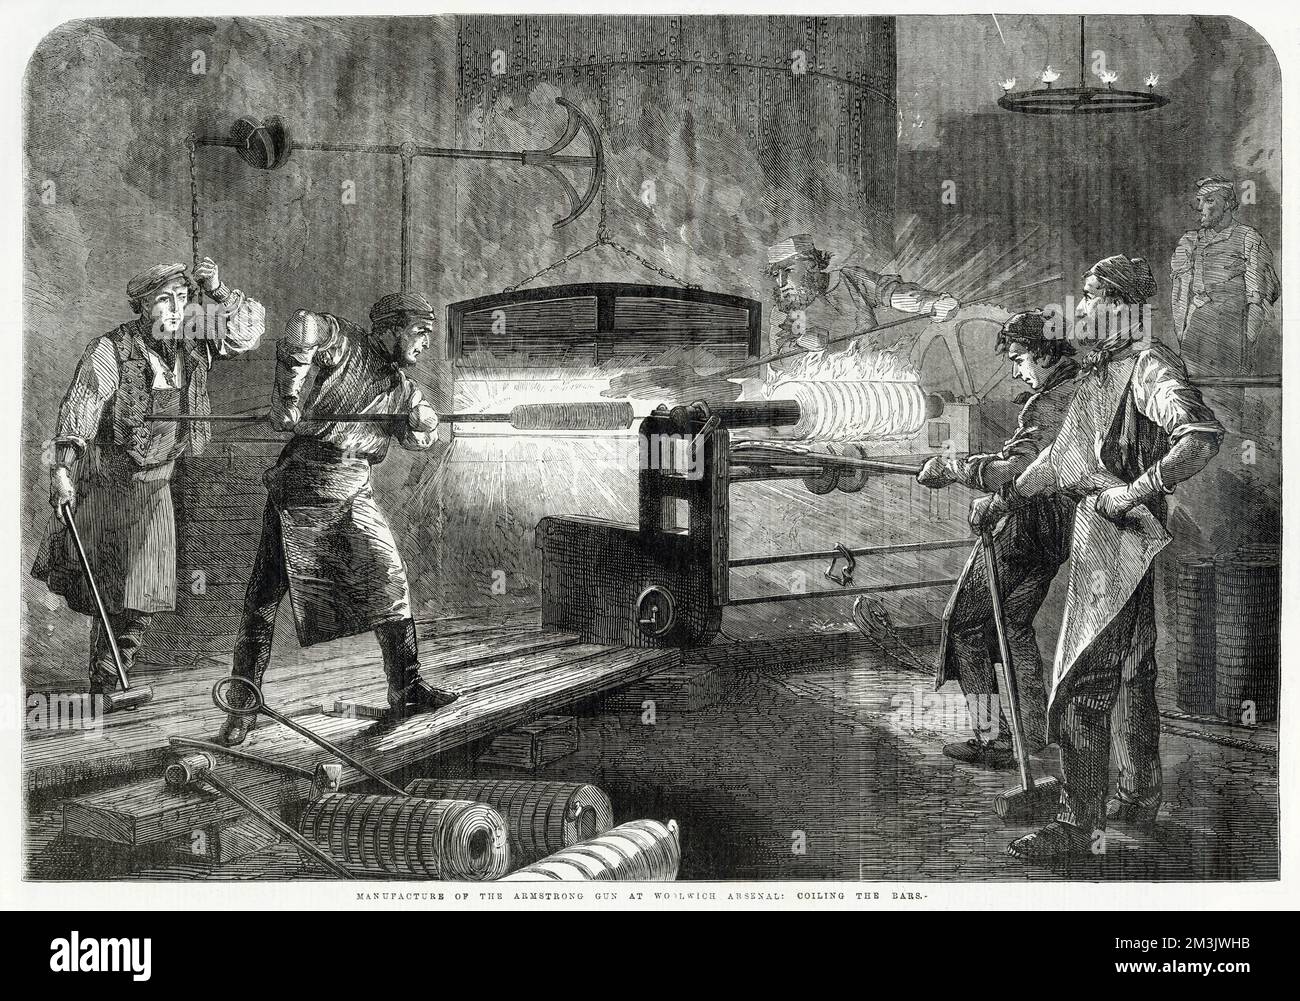 Scena a Woolwich Arsenal, Londra, in cui viene prodotta una pistola armstrong. Questa pistola fu introdotta nell'Esercito britannico nel 1859 ed era una delle prime armi da campo di carico per la brezza dell'era moderna. La pistola potrebbe sparare shrapnel, caso sparato o un esplosivo 11,56lb. shell ed è stato considerato estremamente preciso. Situato vicino al Royal Dockyard, Woolwich è cambiato per la prima volta da un deposito di stoccaggio a una fabbrica di munizioni alla fine del 17th ° secolo. La fabbrica Armstrong Rifle è stata aperta intorno al 1858. Foto Stock